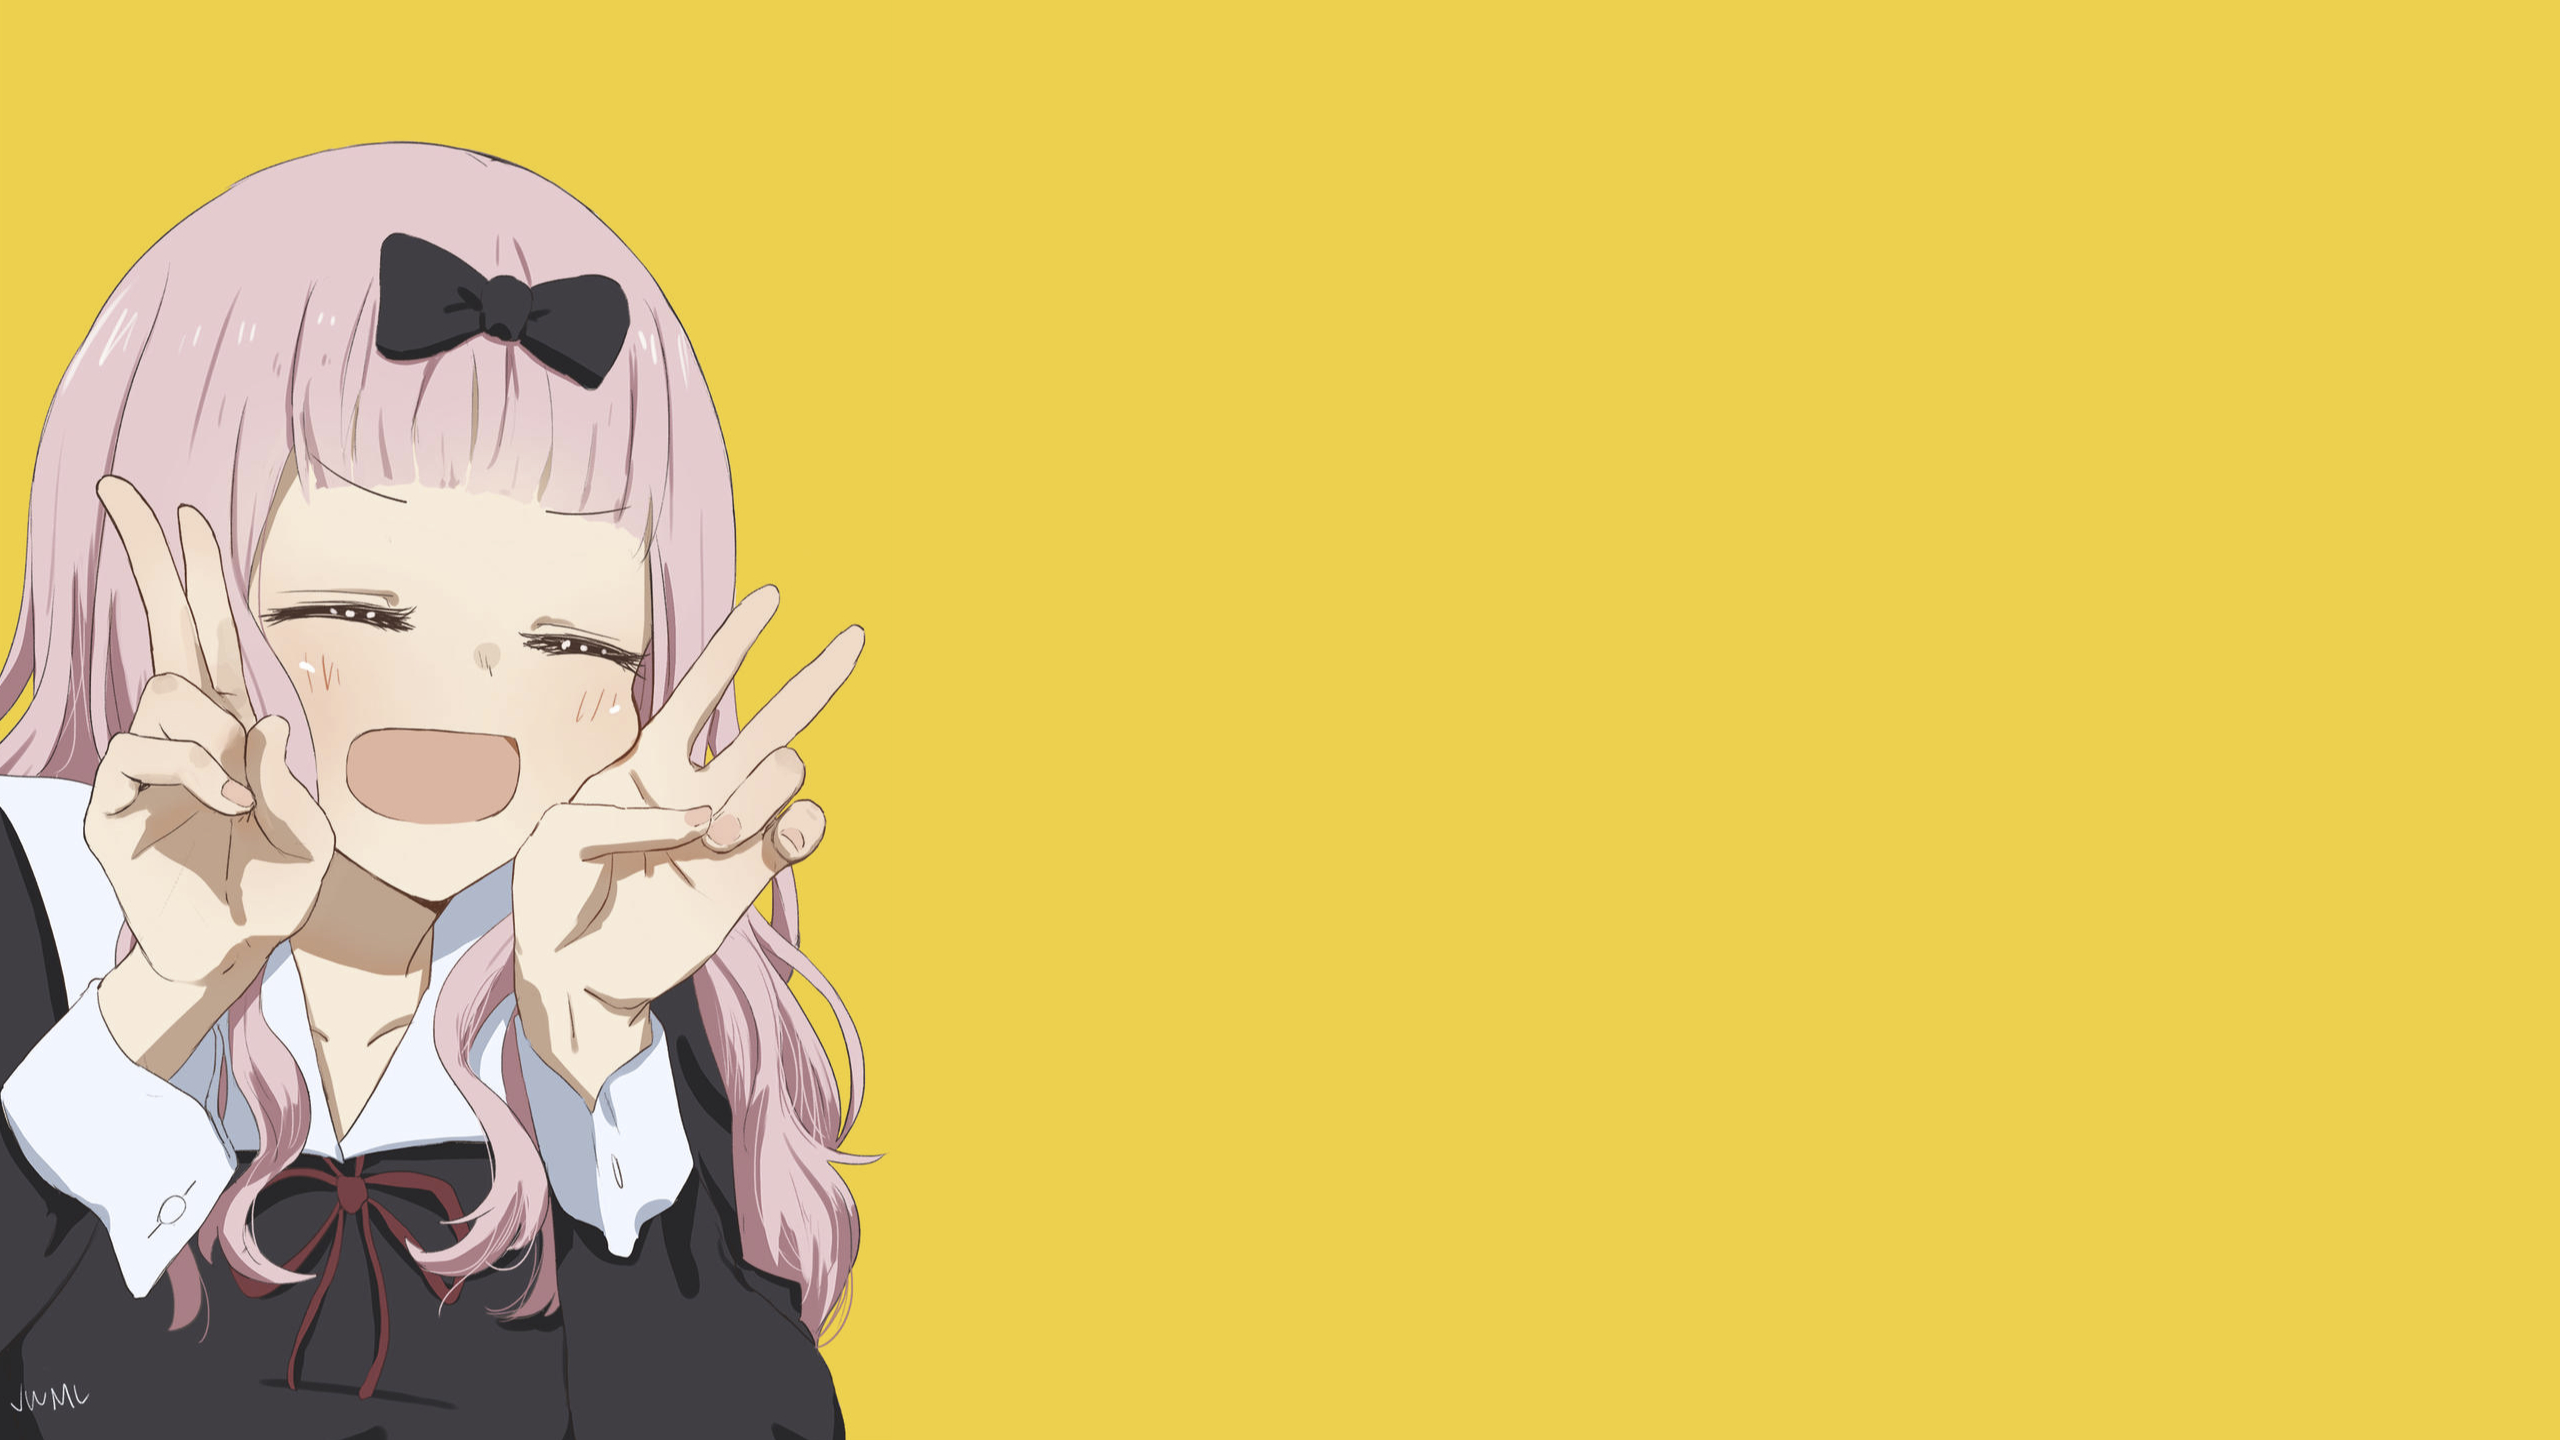 Anime 2560x1440 anime anime girls Kaguya-Sama: Love is War Chika Fujiwara simple background pink hair